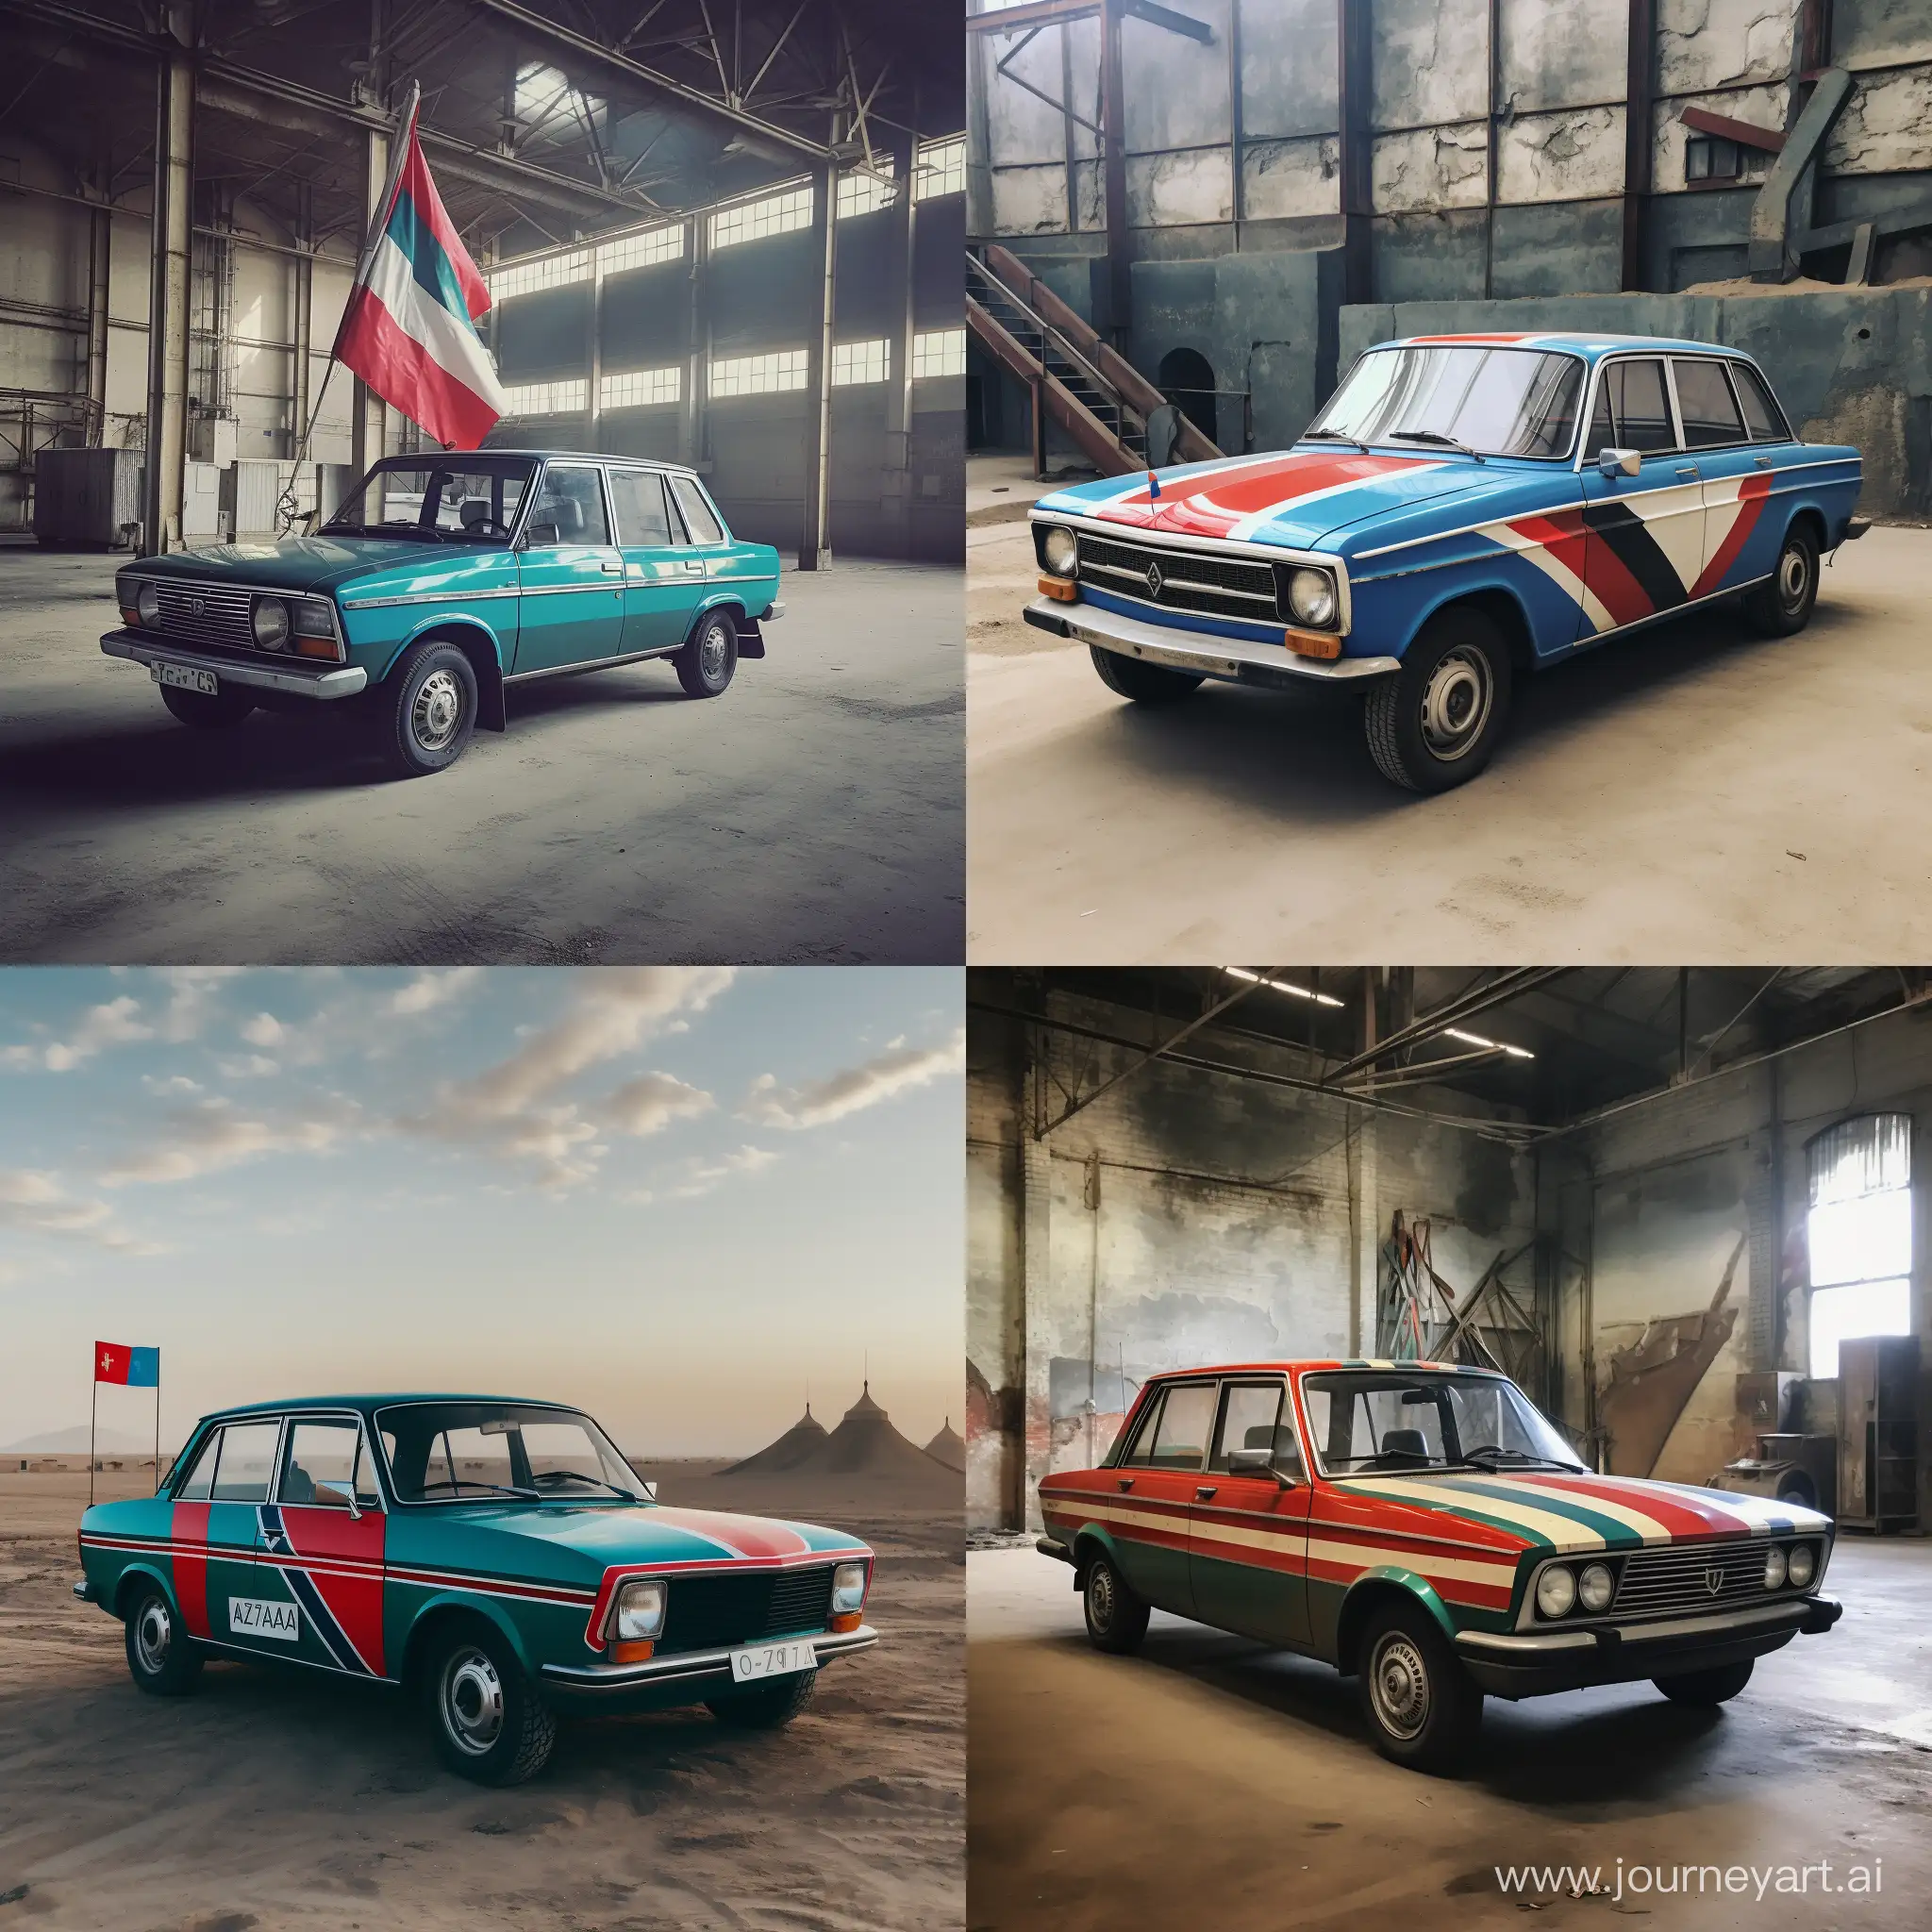 Azerbaijan-Flag-on-ExSoviet-Vaz-2107-Car-Patriotic-Automotive-Tribute